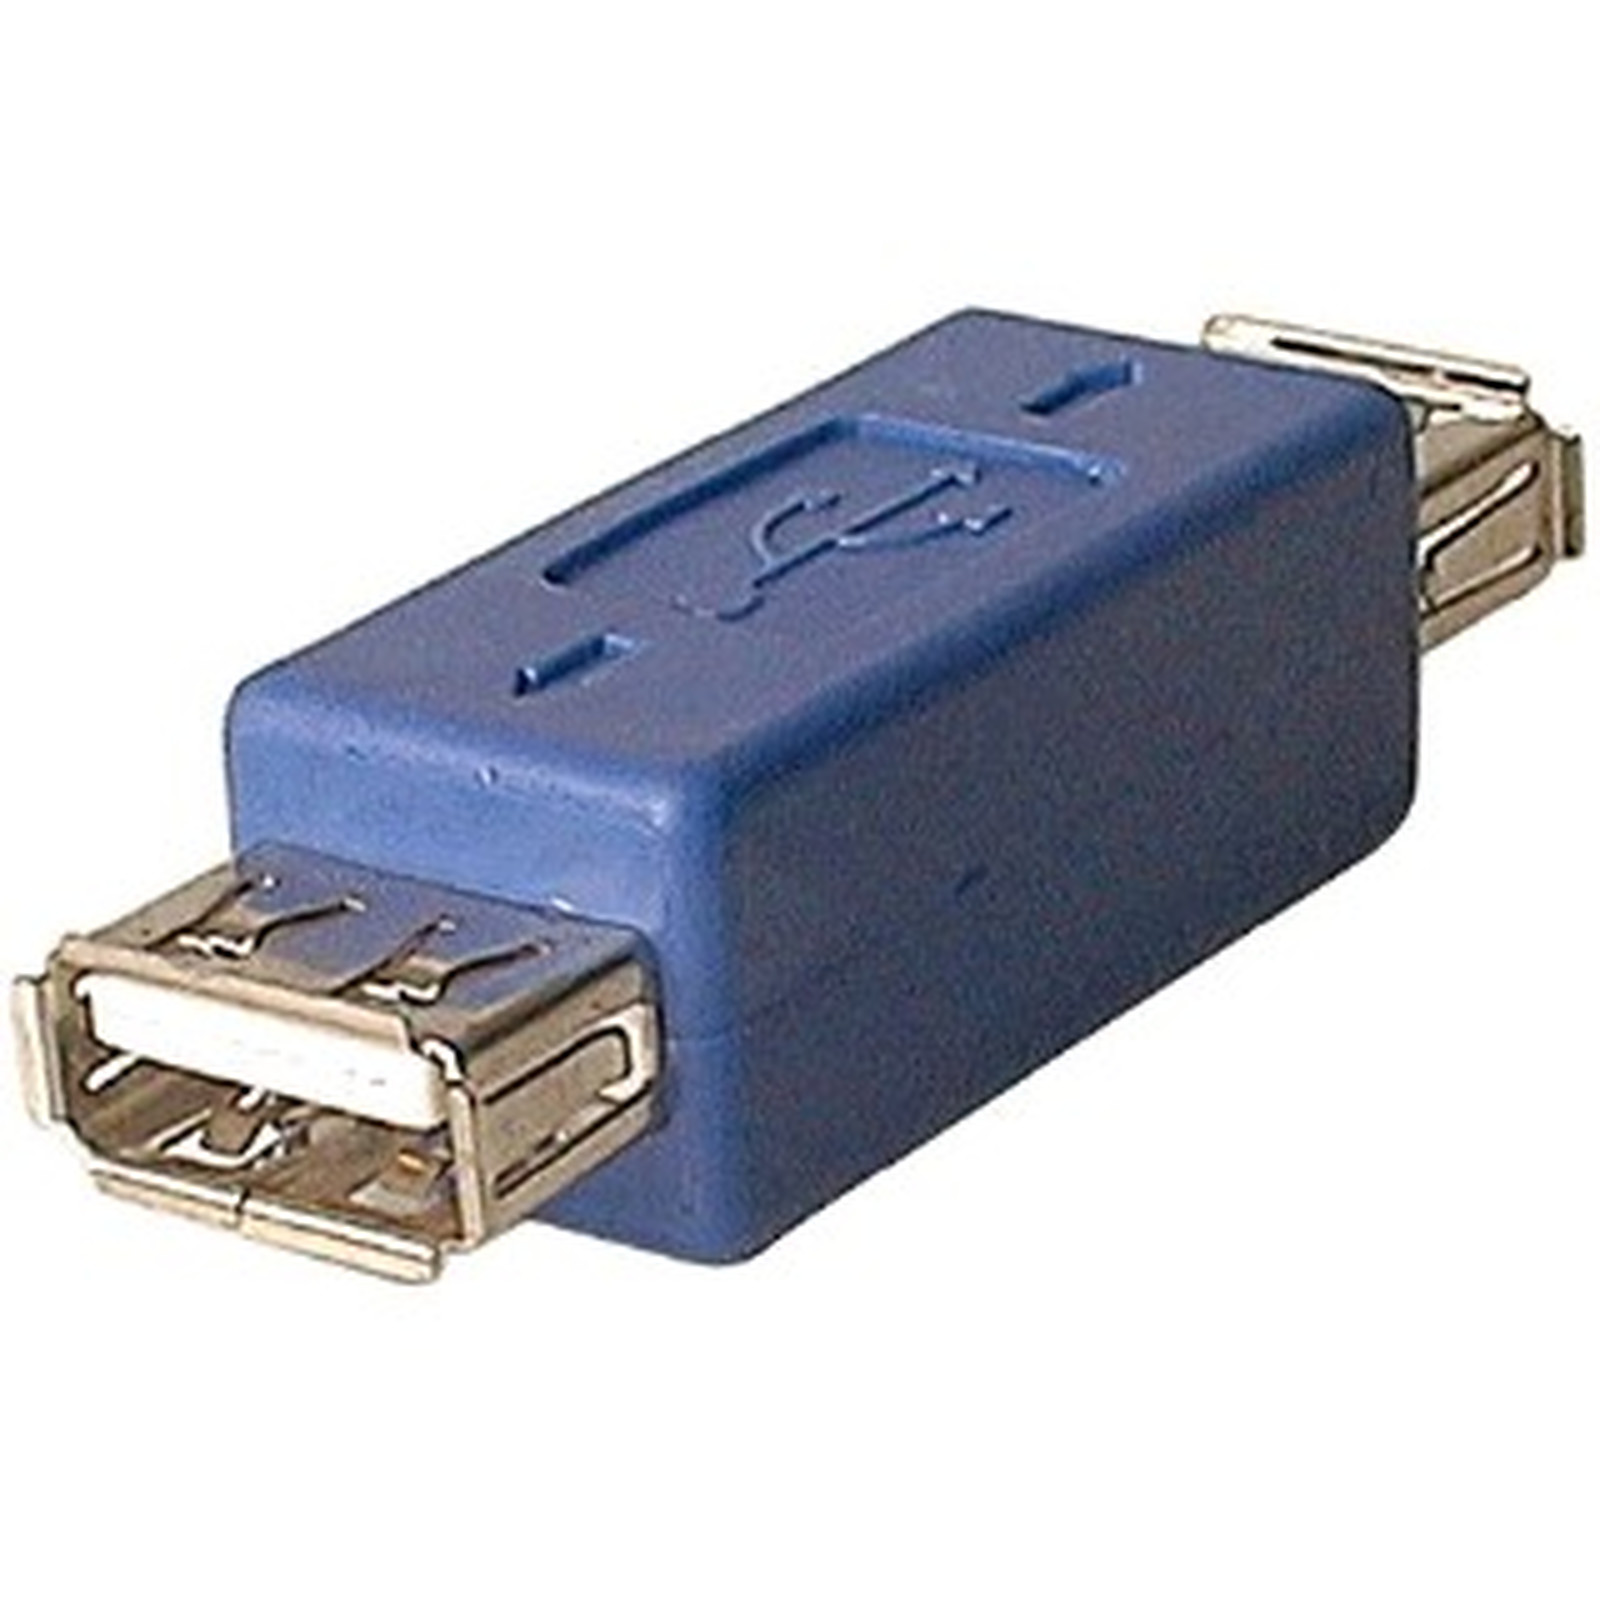 Adaptateur USB 2.0 type A femelle / A femelle - USB Generique